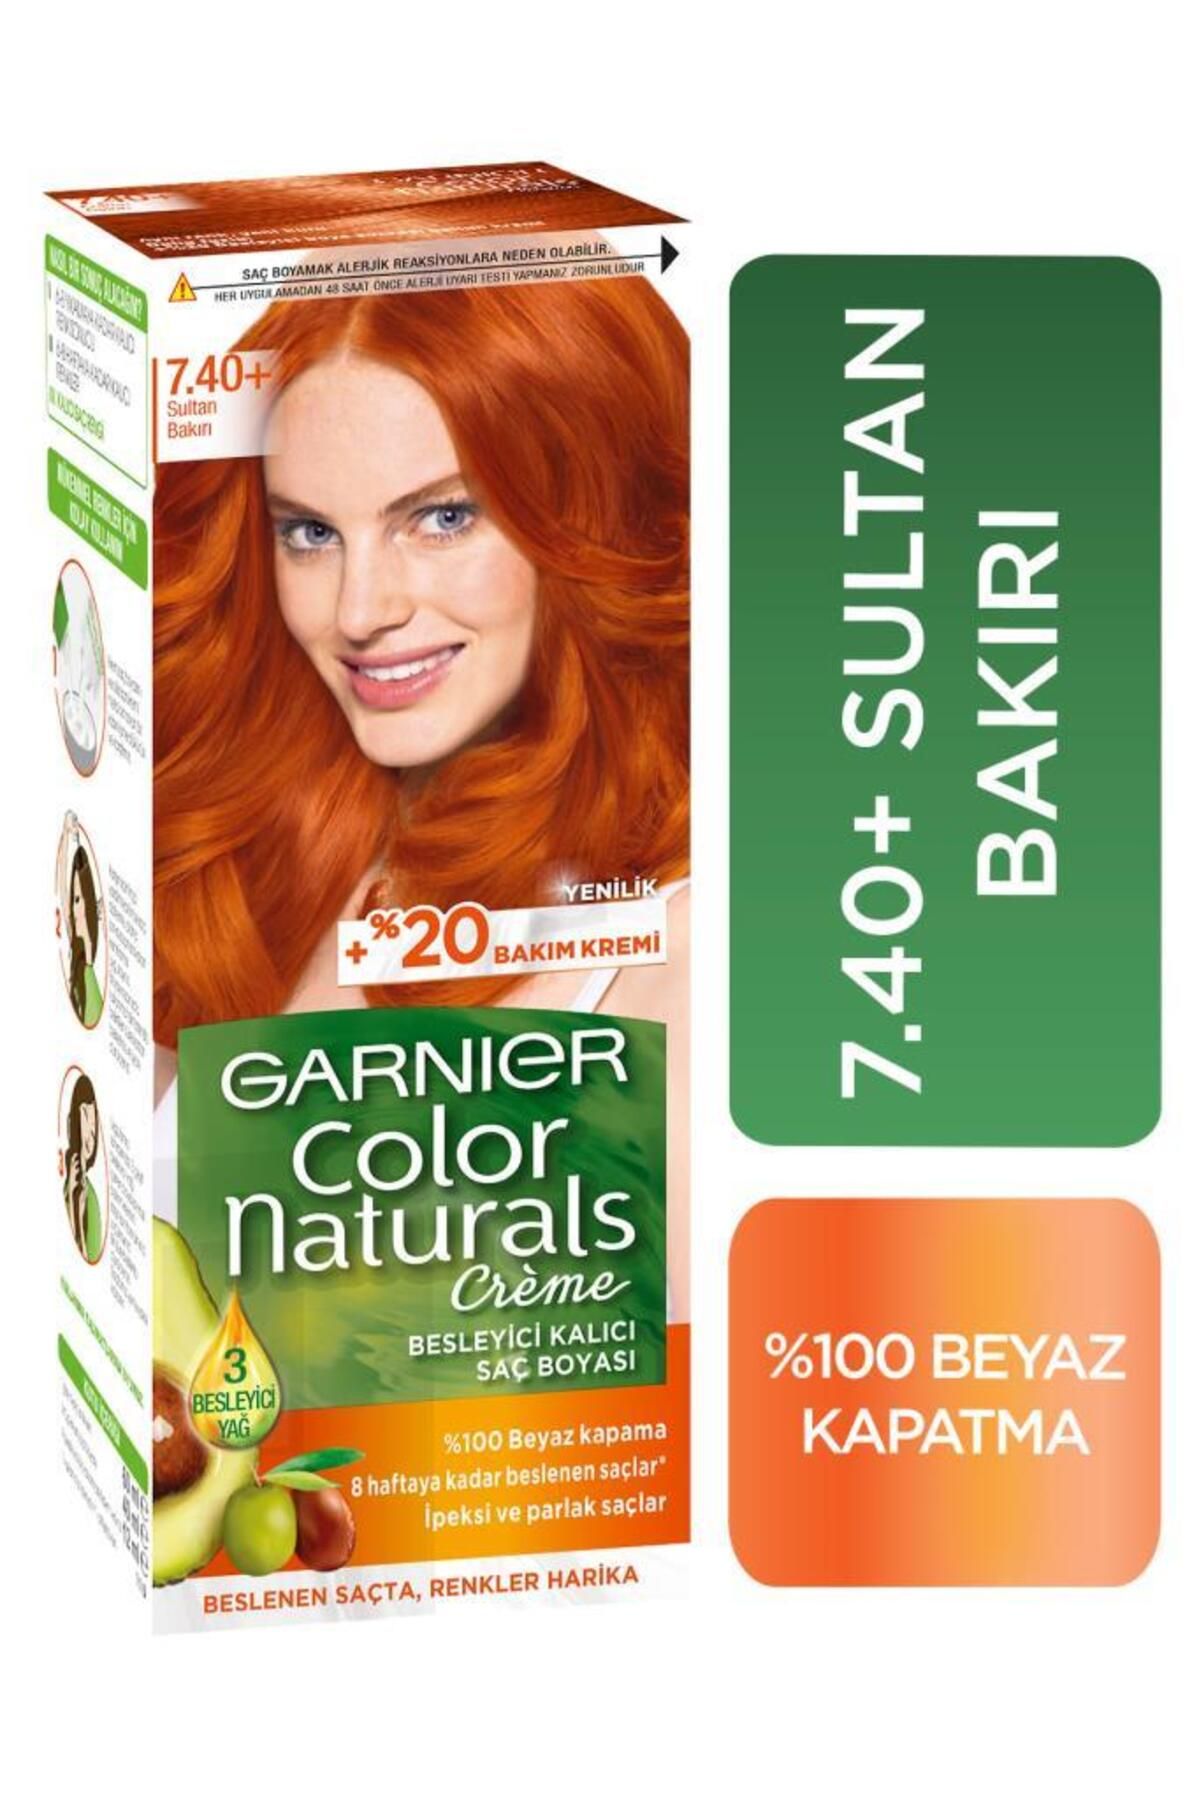 Garnier Color Naturals Saç Boyası 7.40 Sultan Bakırı